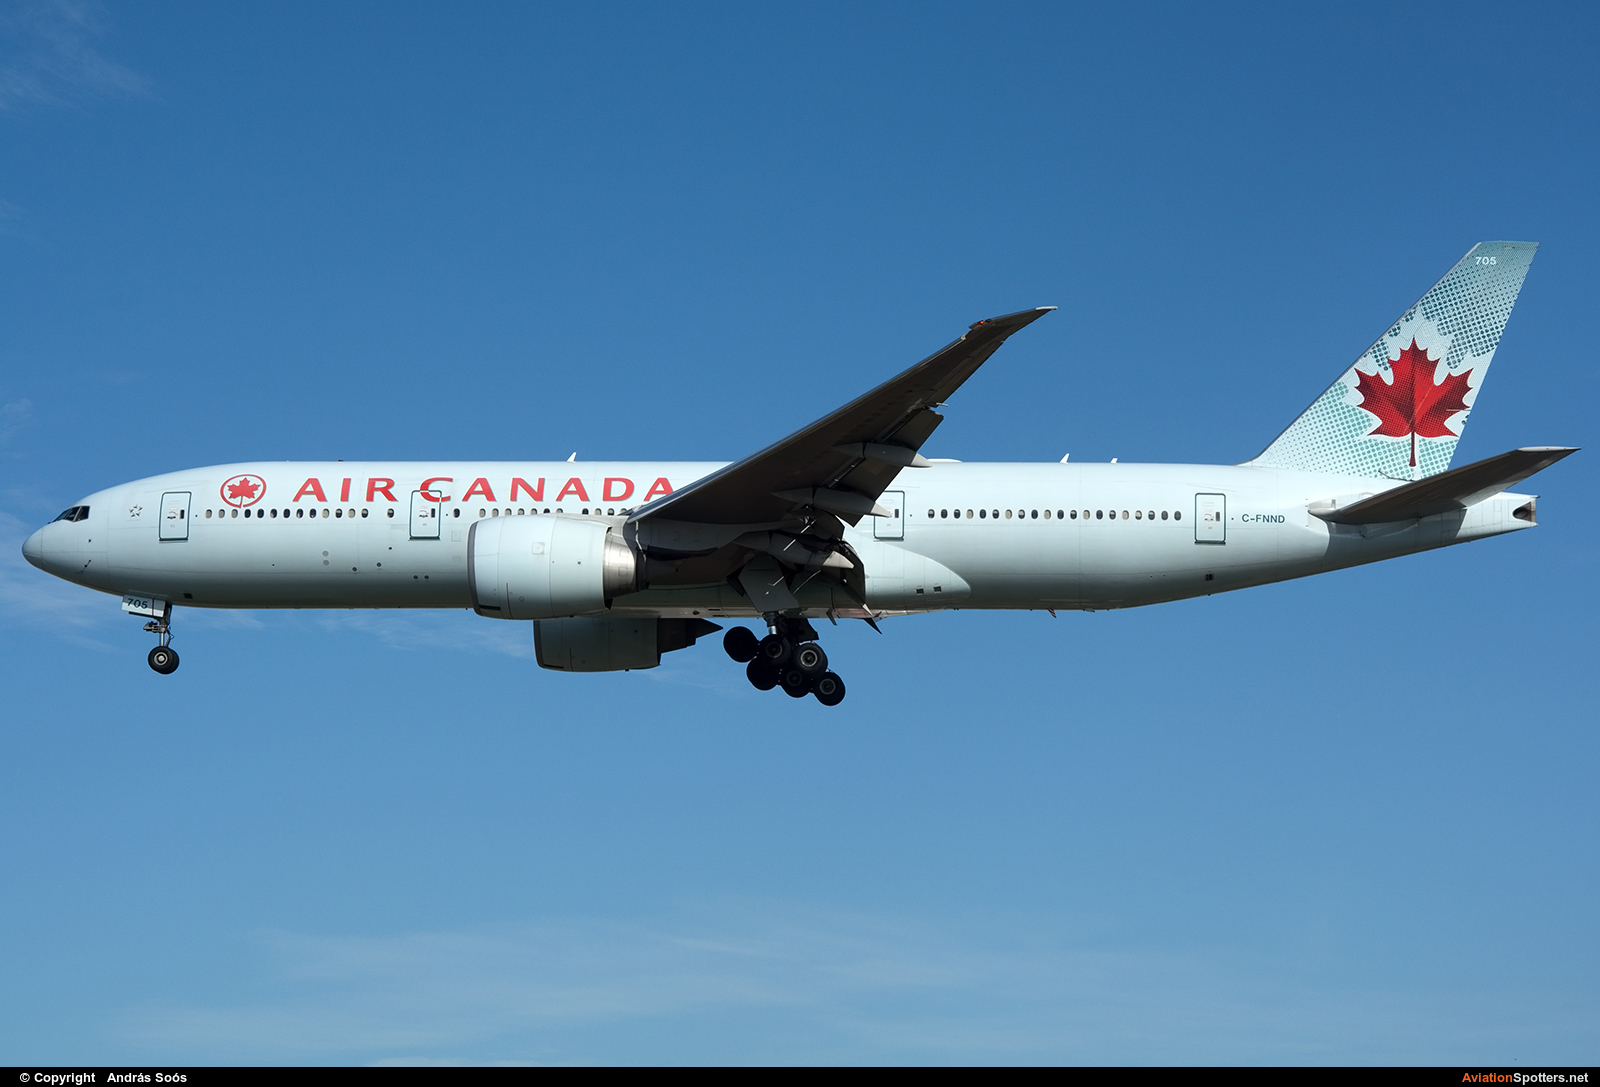 Air Canada  -  777-200LR  (C-FNND) By András Soós (sas1965)